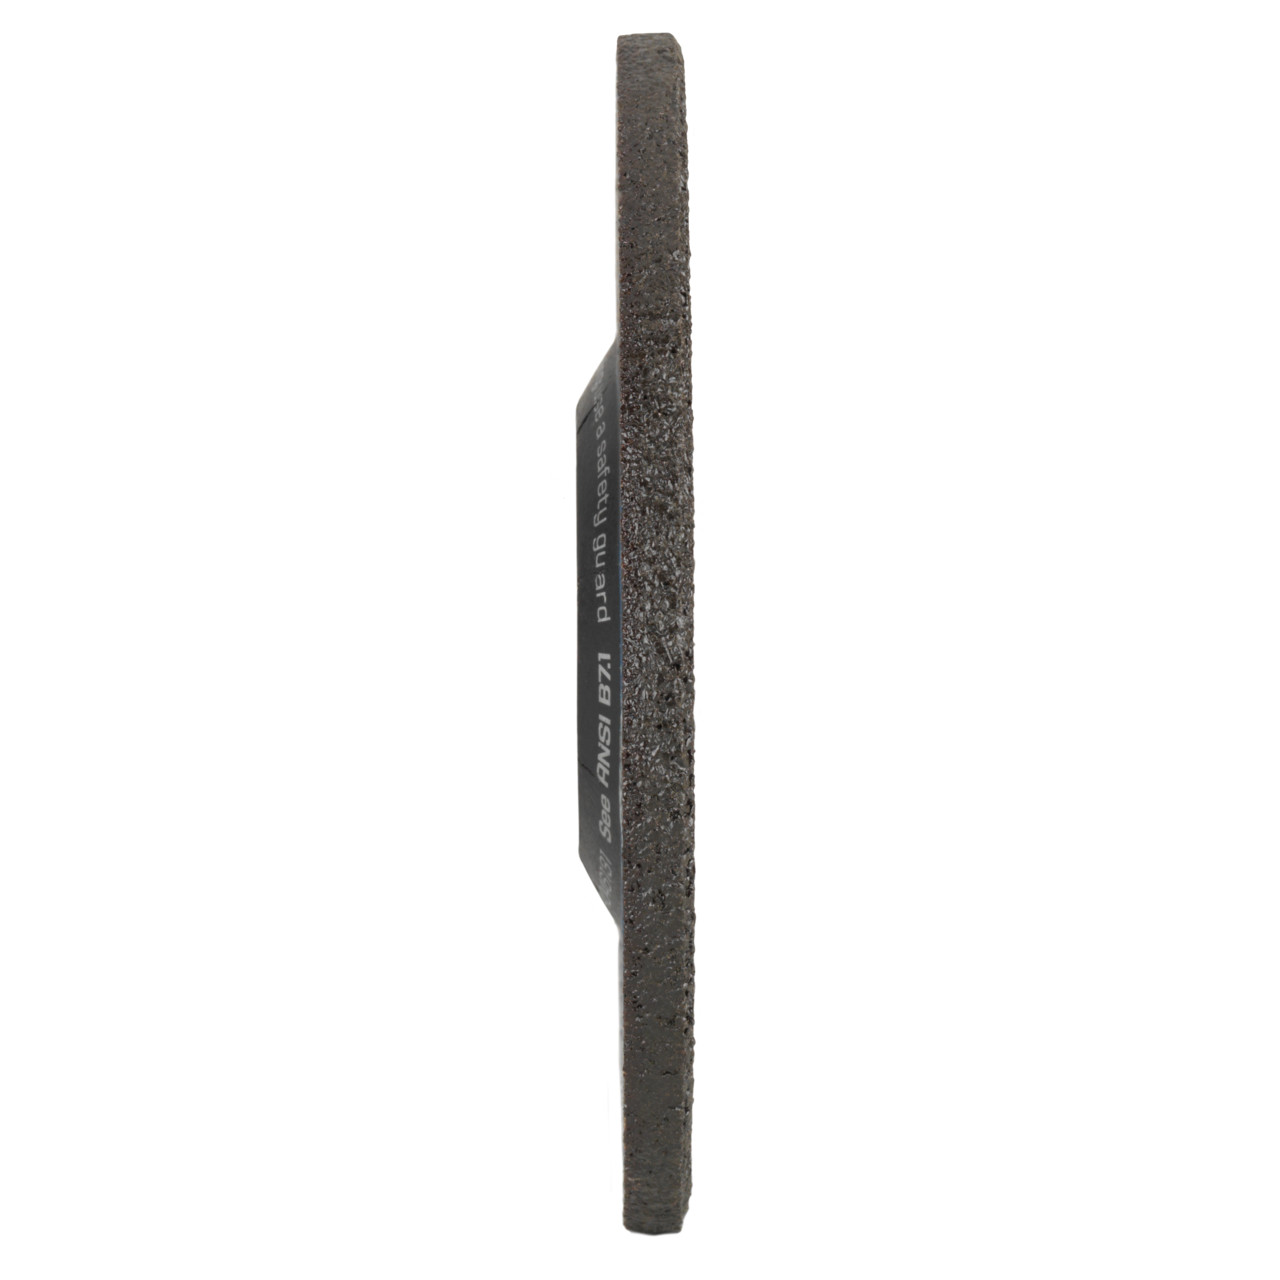 TYROLIT slijpschijf DxUxH 150x7x22,23 2in1 voor staal en roestvrij staal, vorm: 27 - offset-uitvoering, Art. 34046132